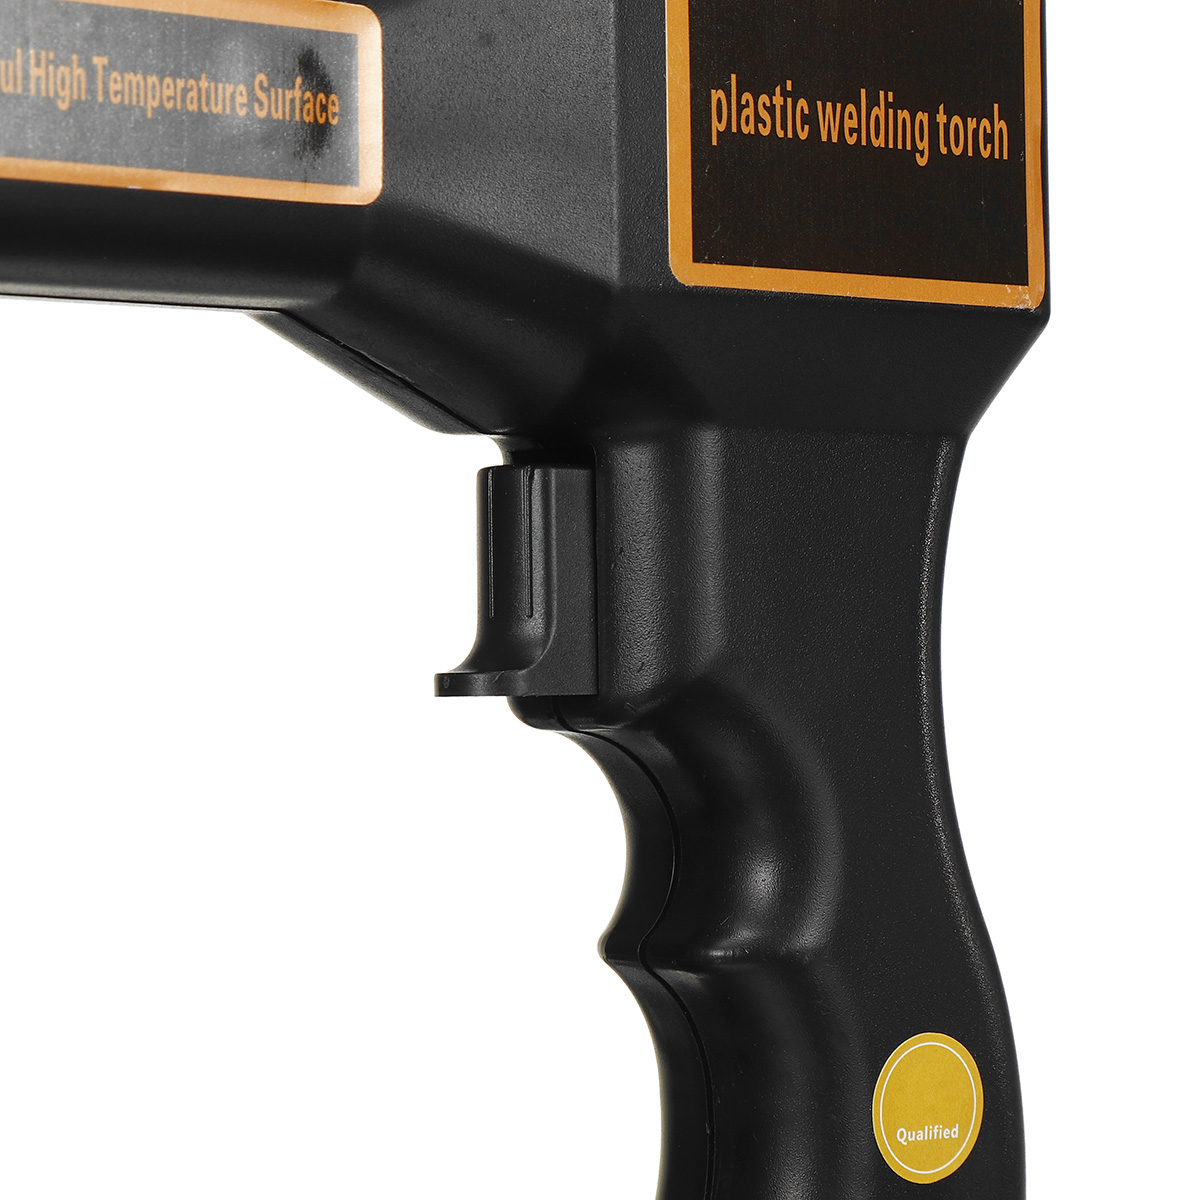 Handy-Plastics-Welder-Staple-PVC-Repairing-Machine-Hot-Stapler-Bumper-Repair-EUUS-Plug-1832317-7